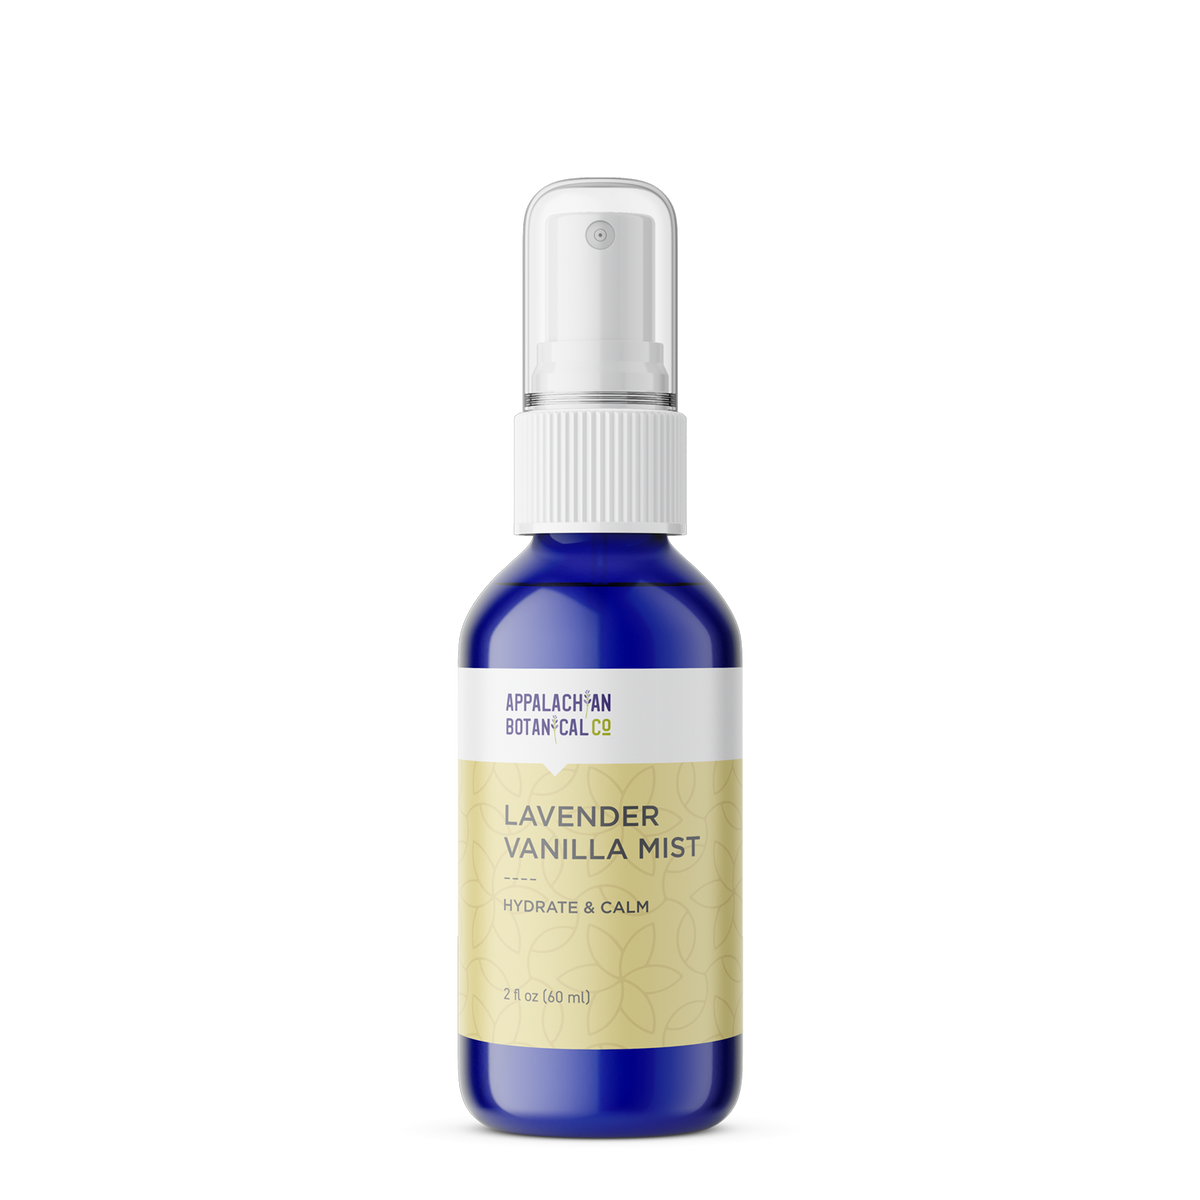 Oakmoss + Lavender, 5 ml. Unisex Perfume Oil – 837 North